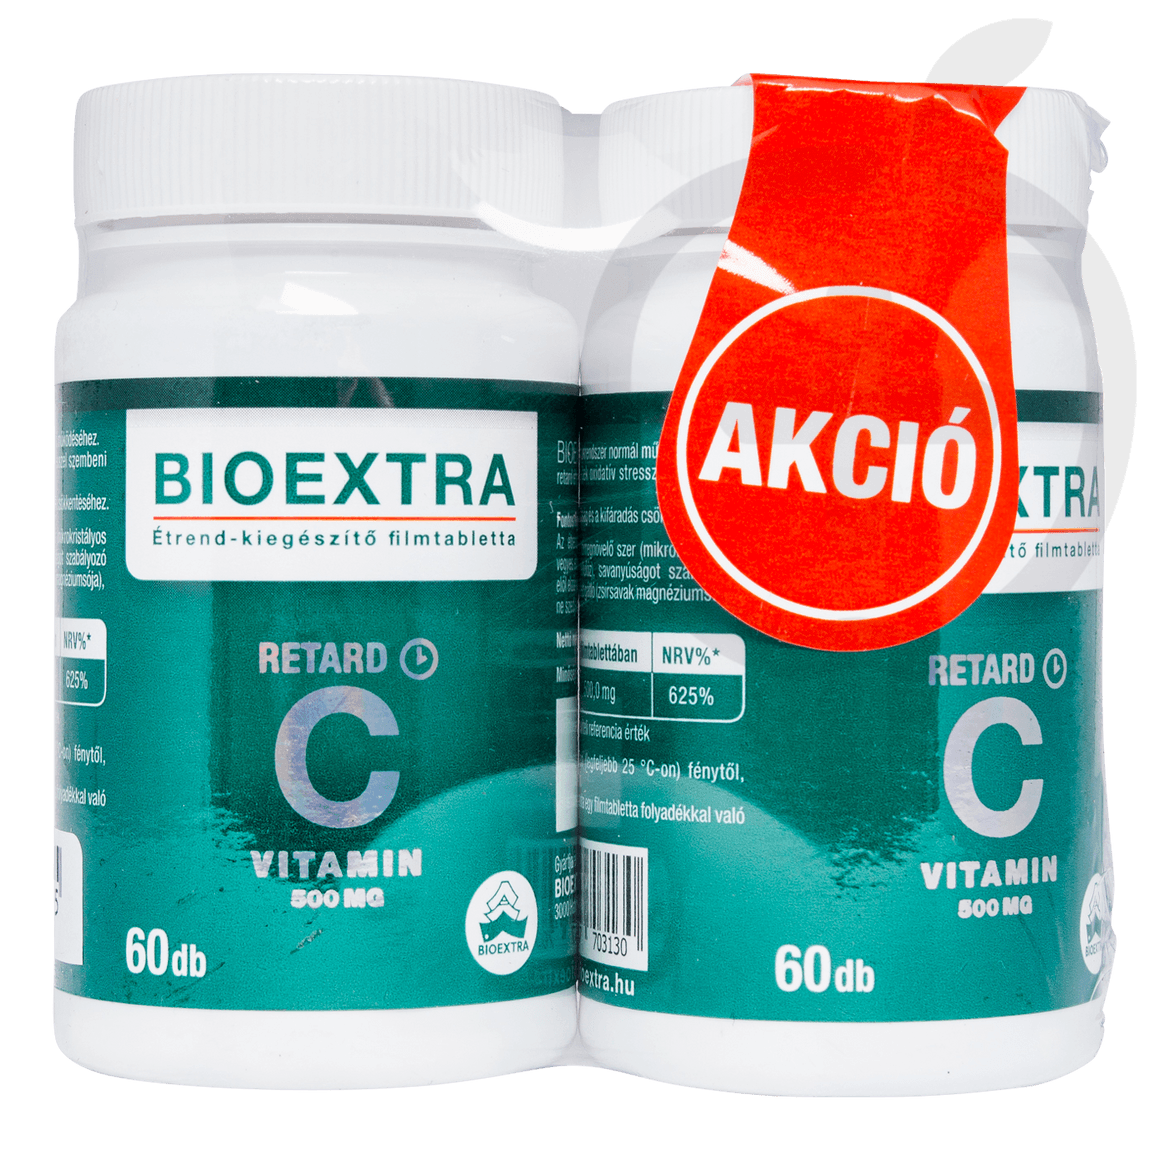 Bioextra C-vitamin 500 mg retard filmtabletta 2 x 60 db